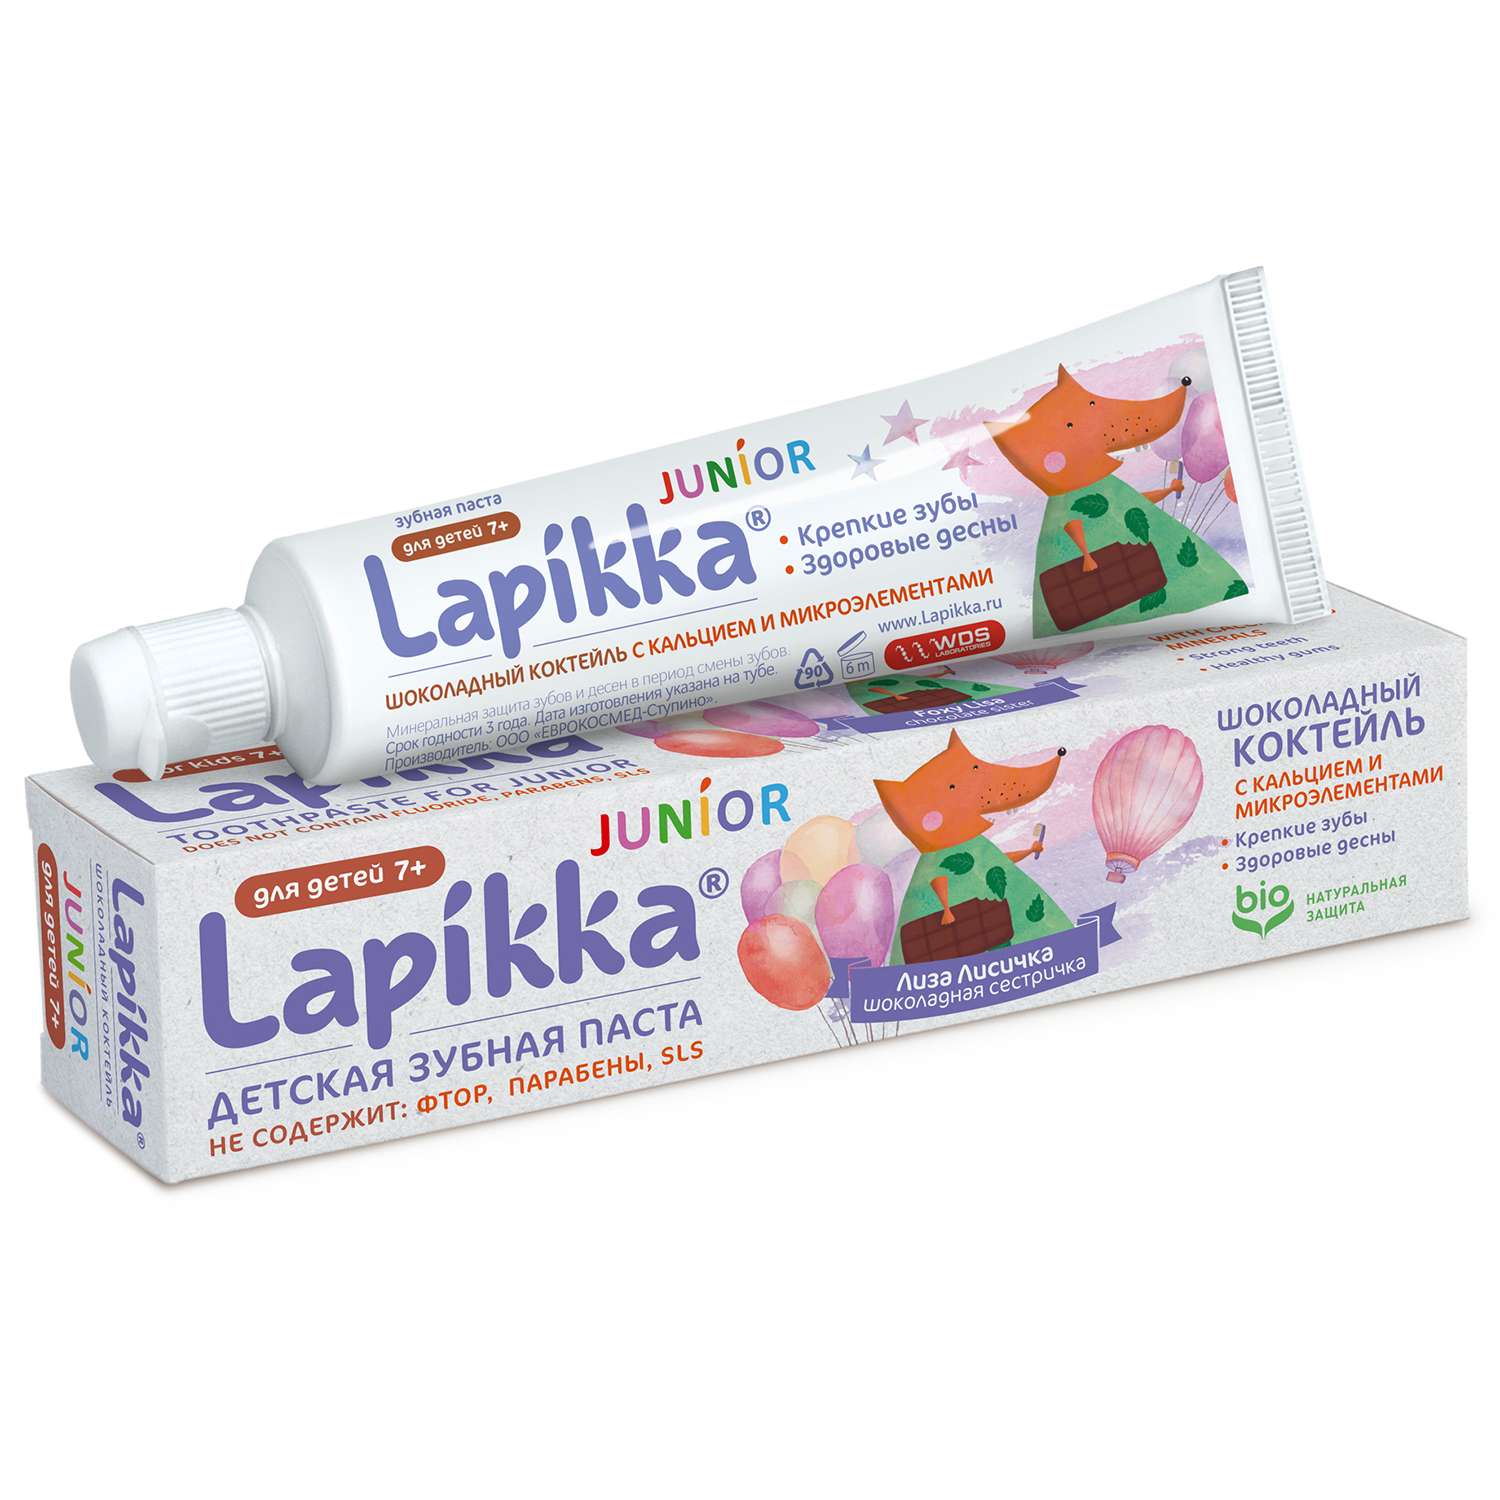 Зубная паста Lapikka Шоколадный коктейль - фото 1